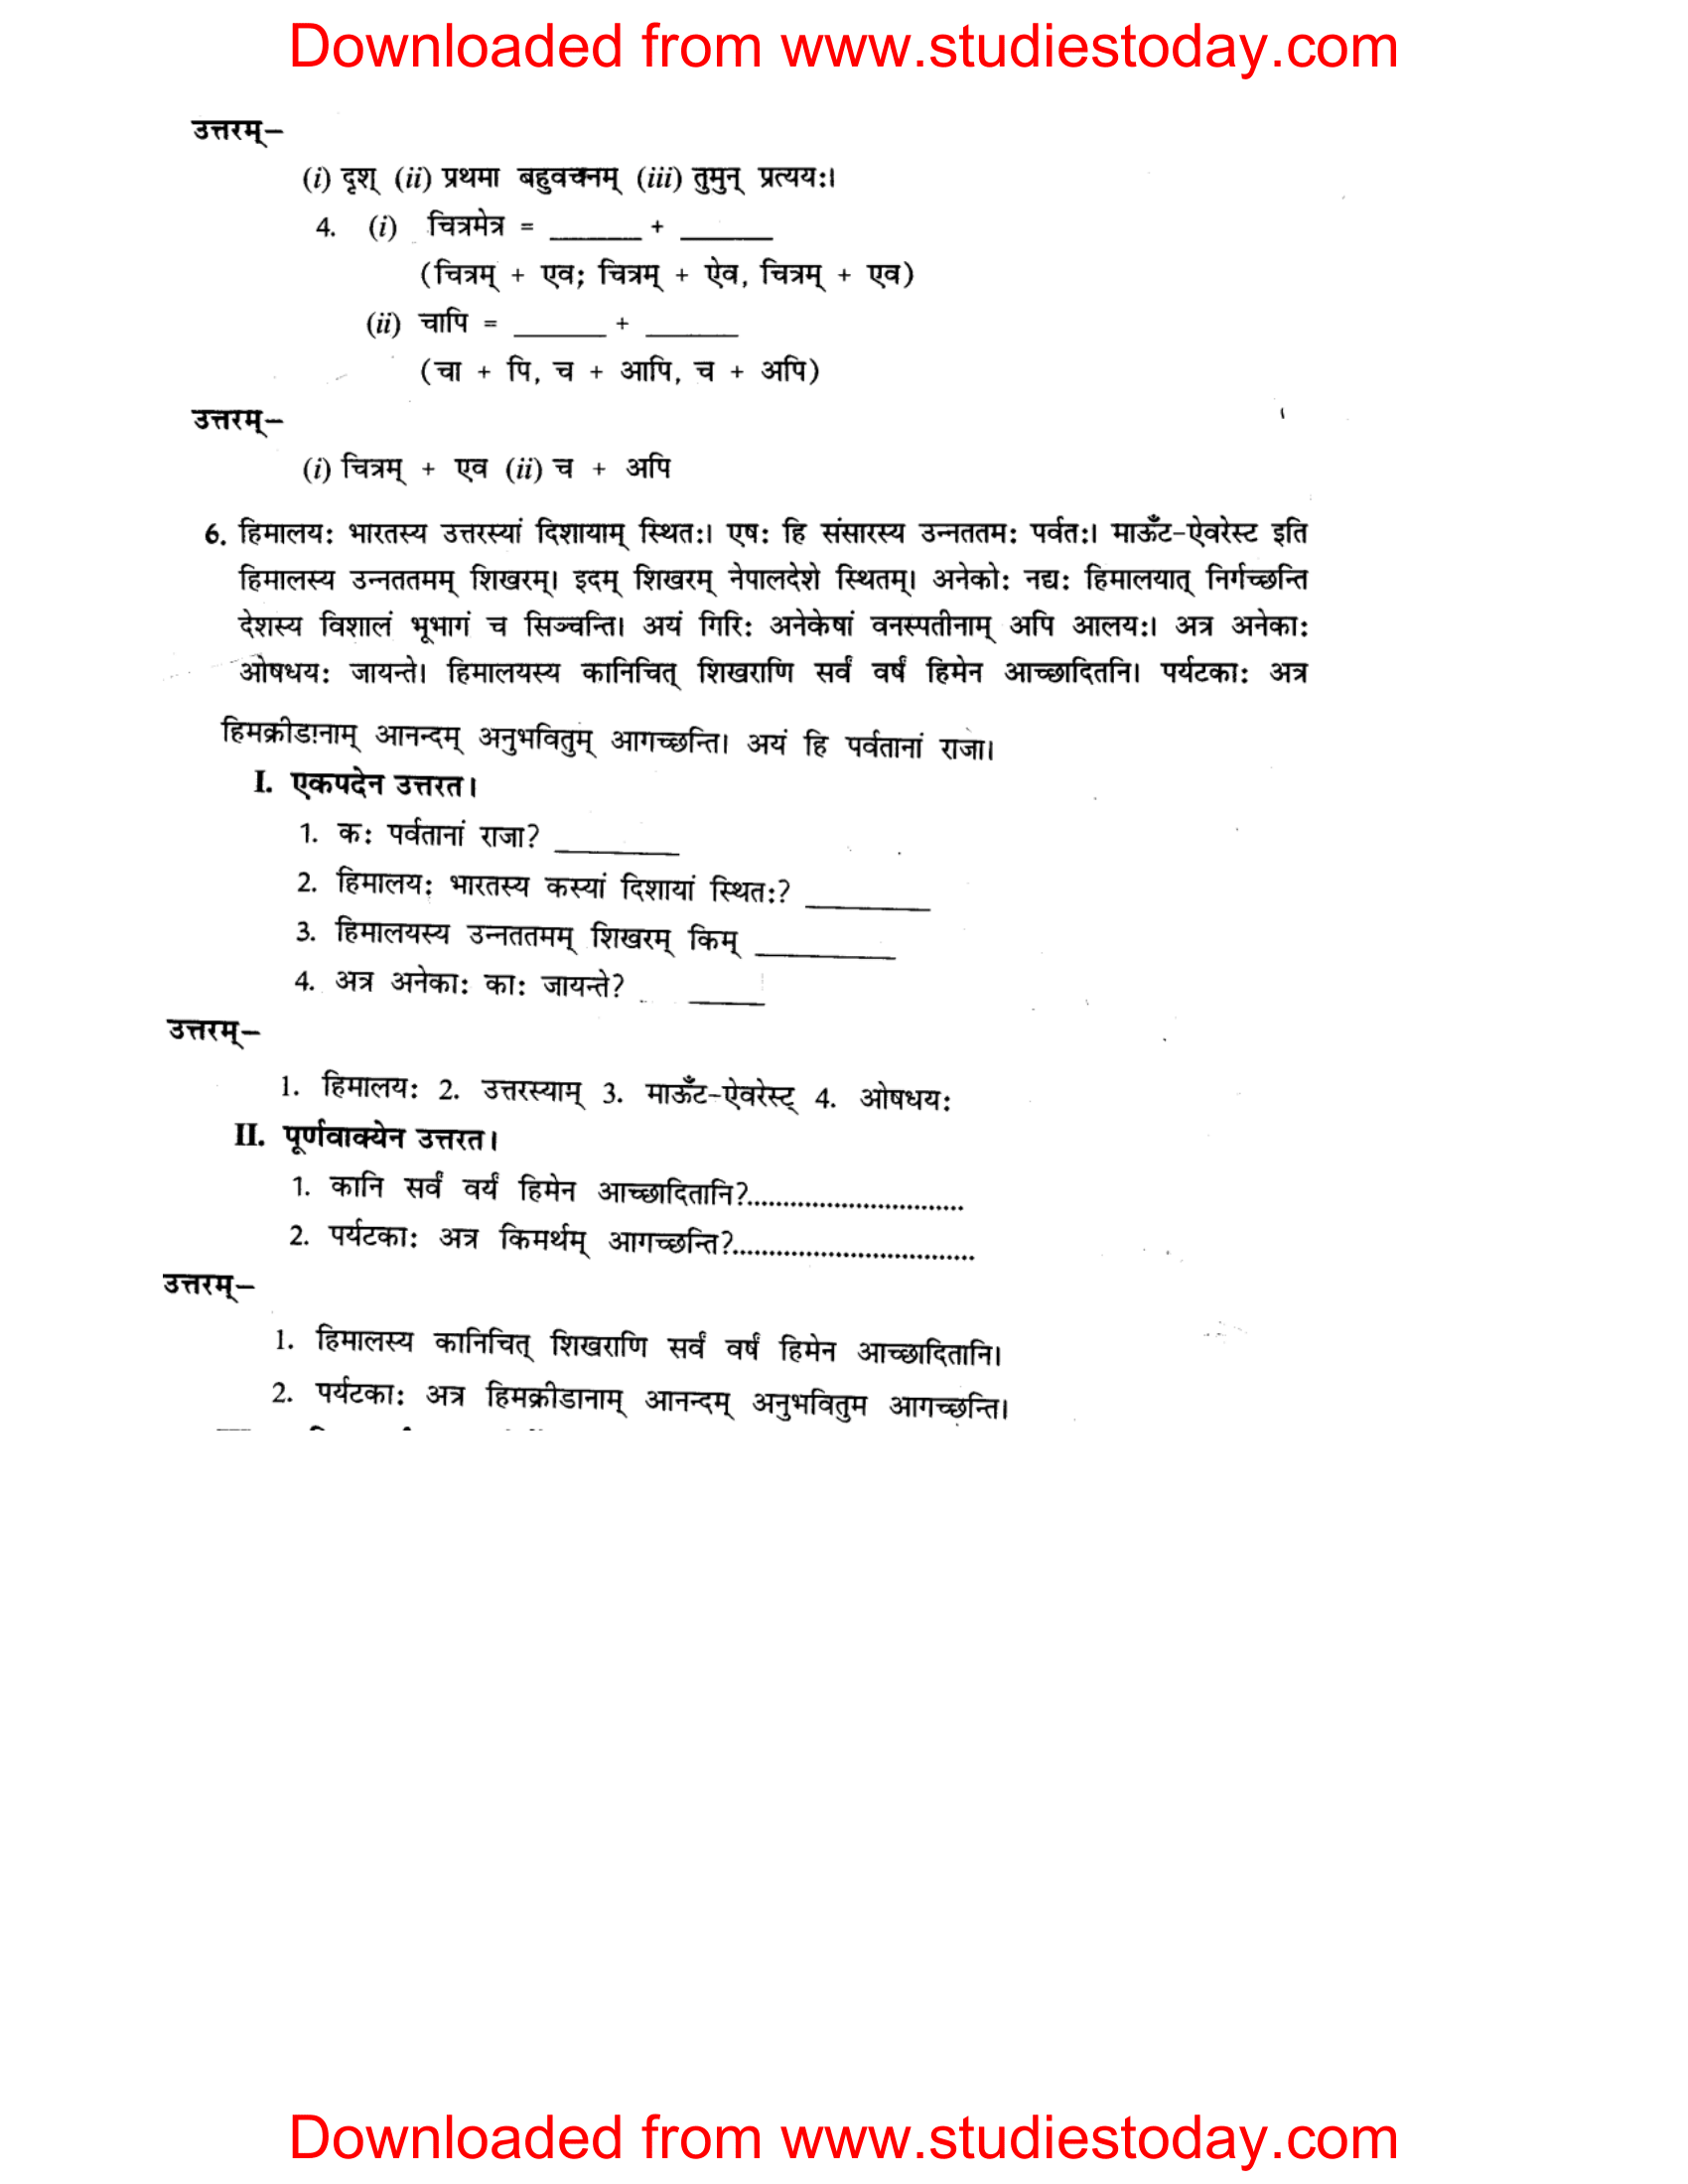 ncert-solutions-class-8-sanskrit-chapter-14-apthint-avbodhan-abhyas-6